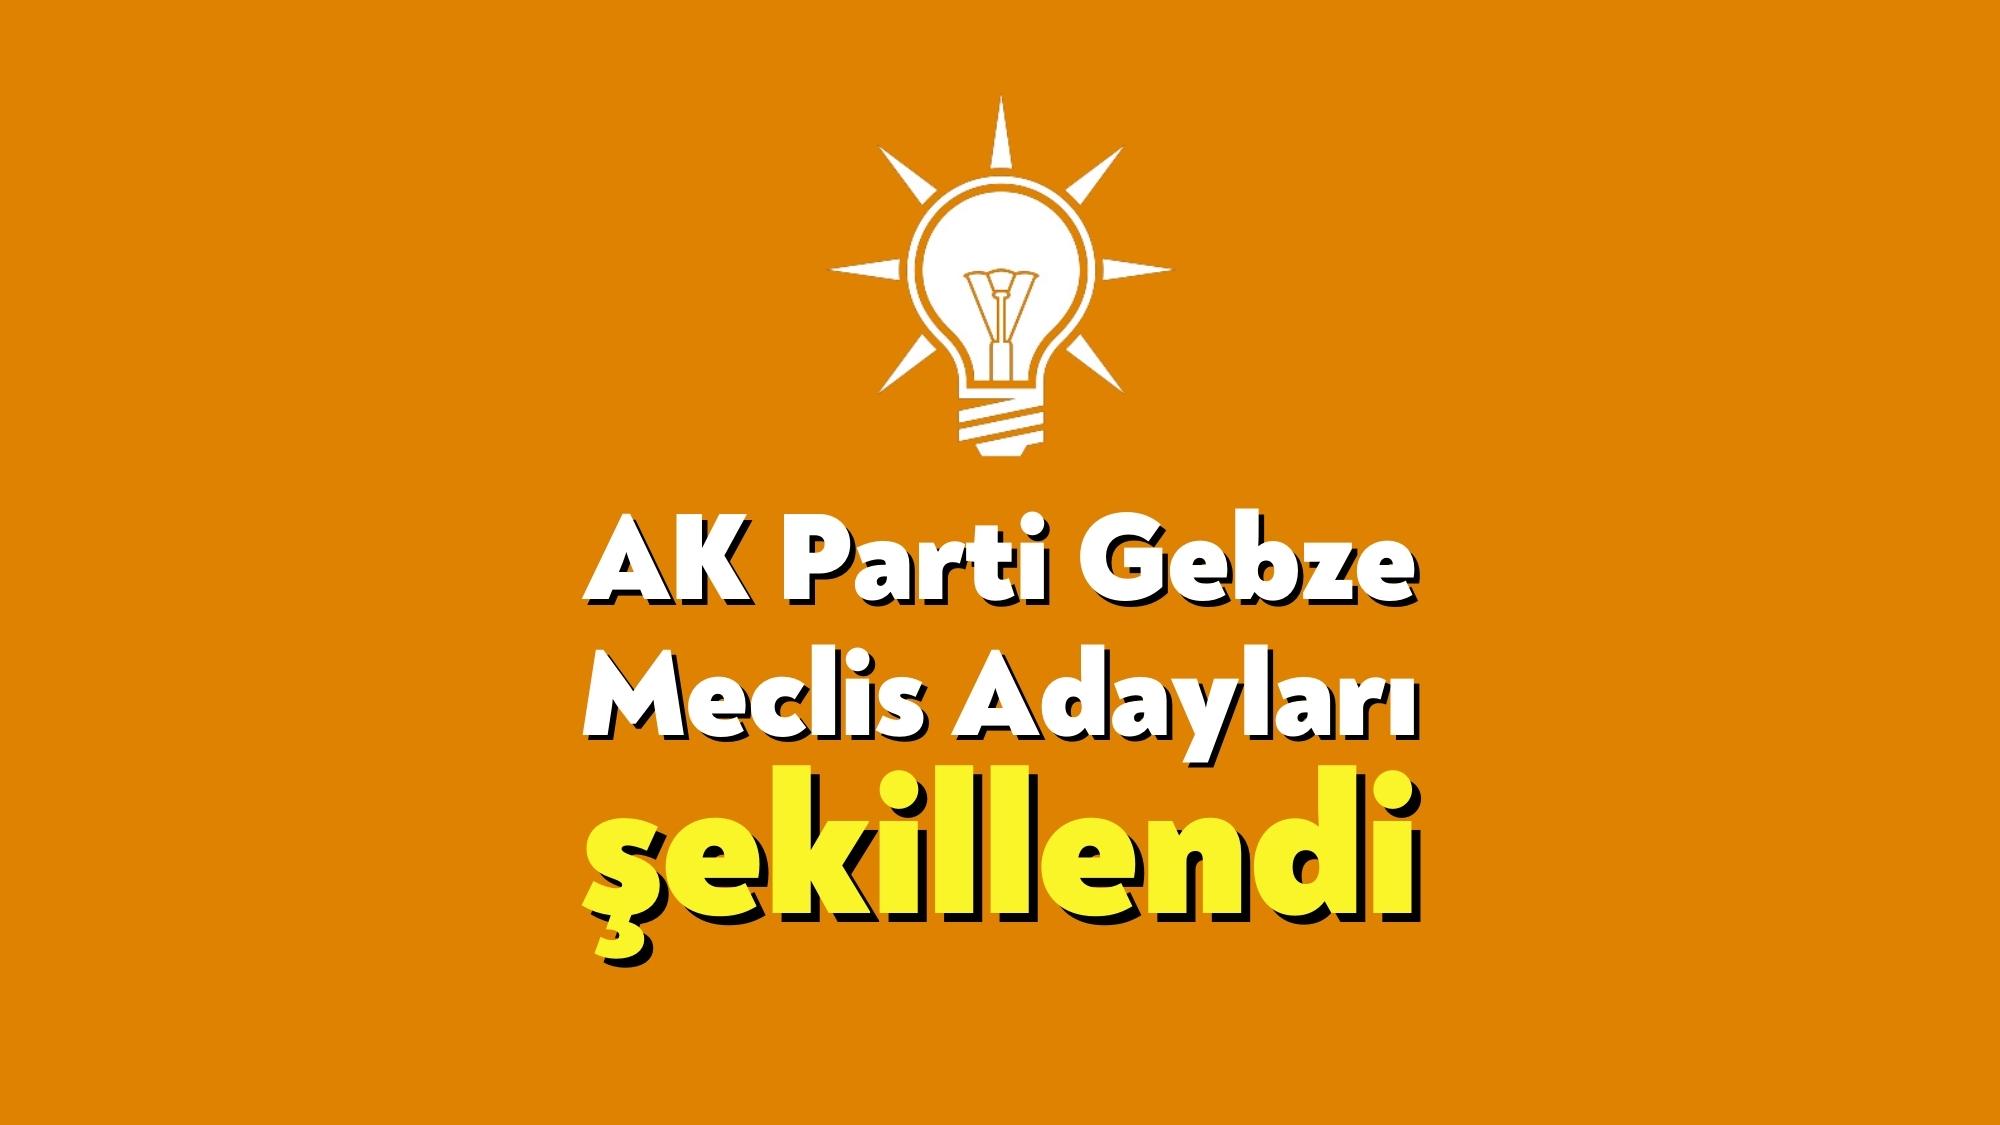 AK Parti Gebze Meclis adayları şekillendi